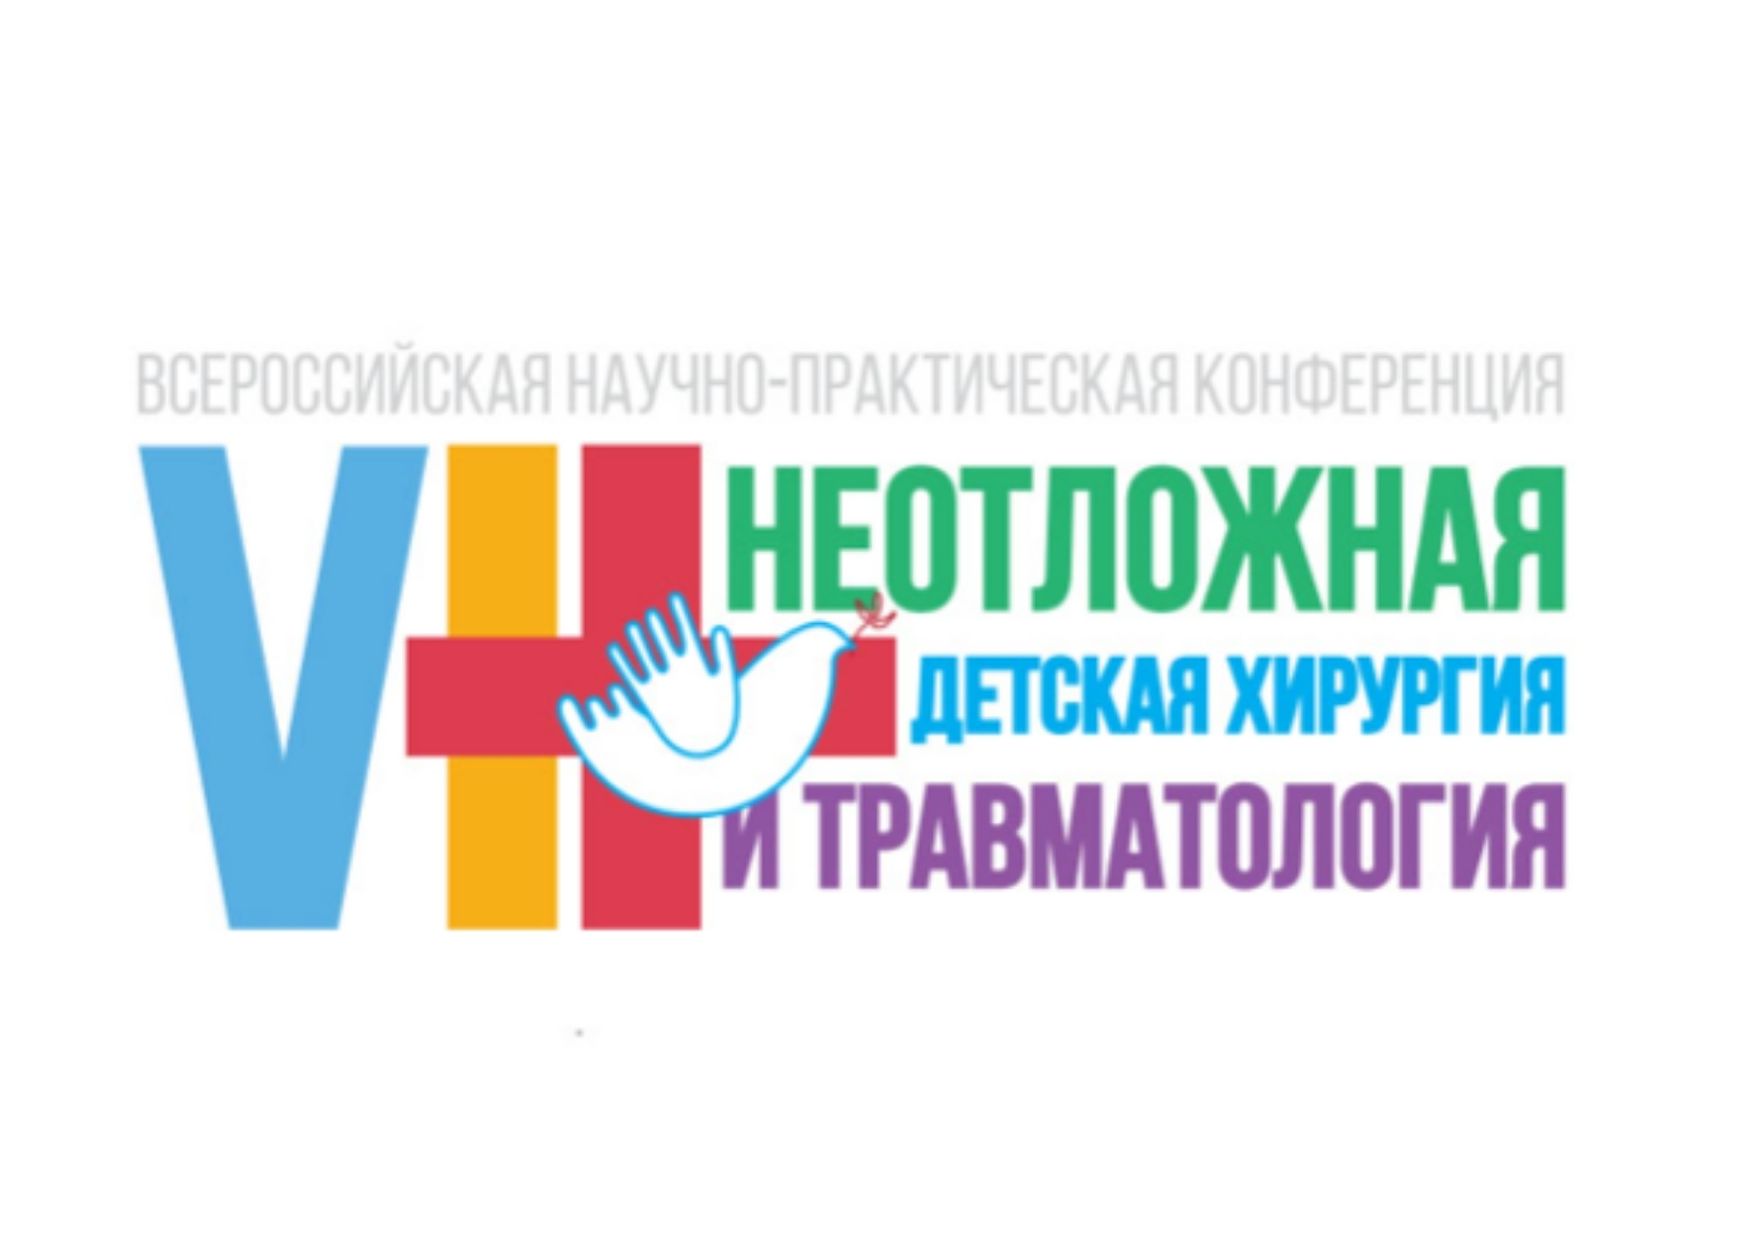 VIII Всероссийская научно-практическая конференция с международным участием «Неотложная детская хирургия и травматология»